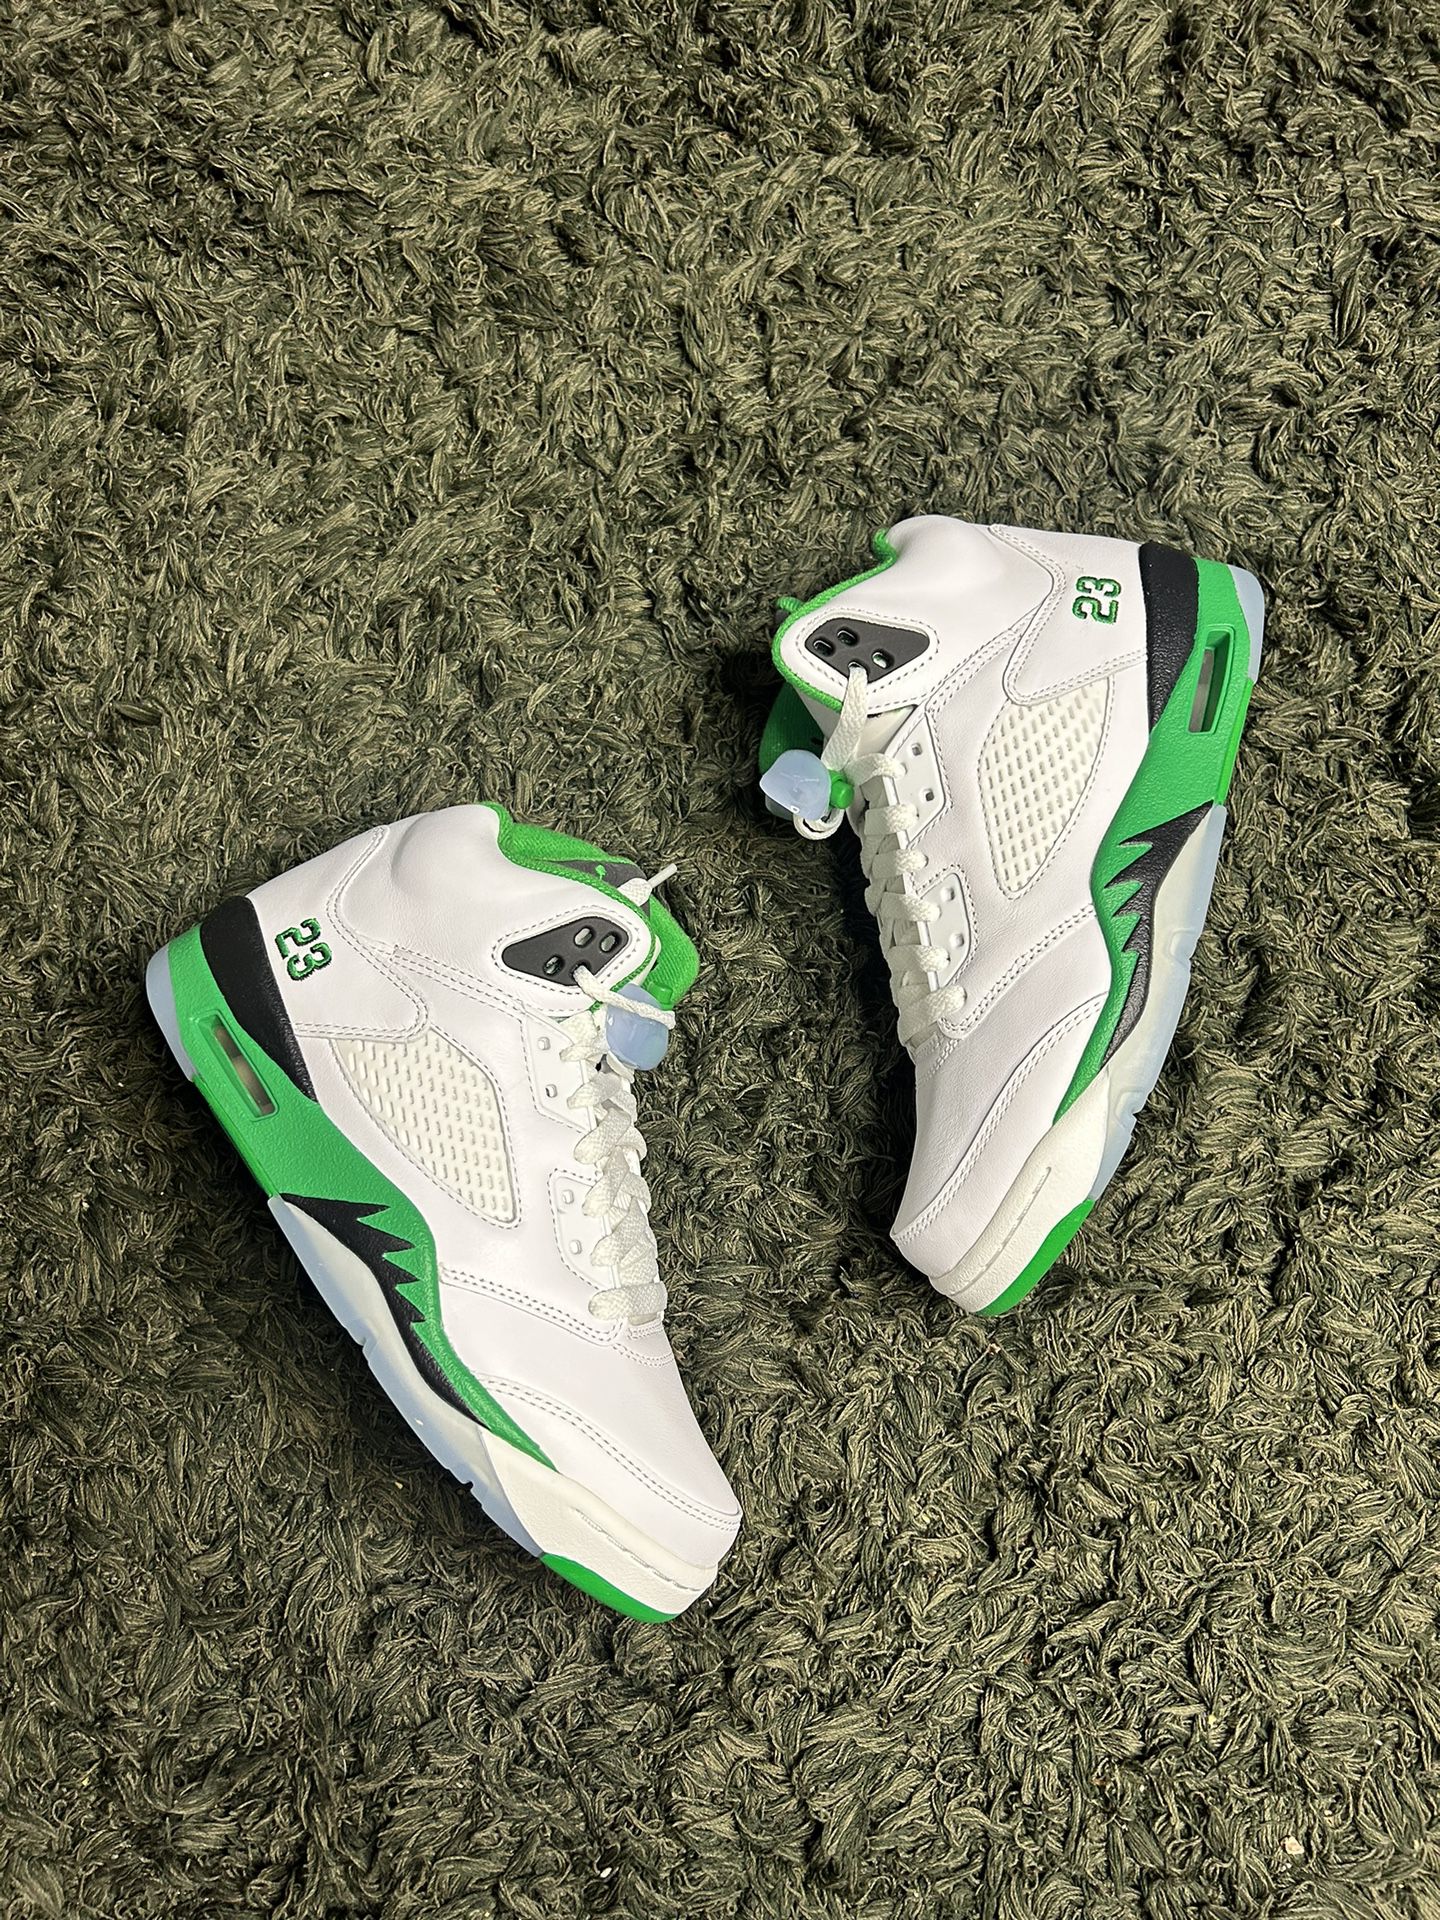 Wmns Air Jordan 5 Retro Lucky Green